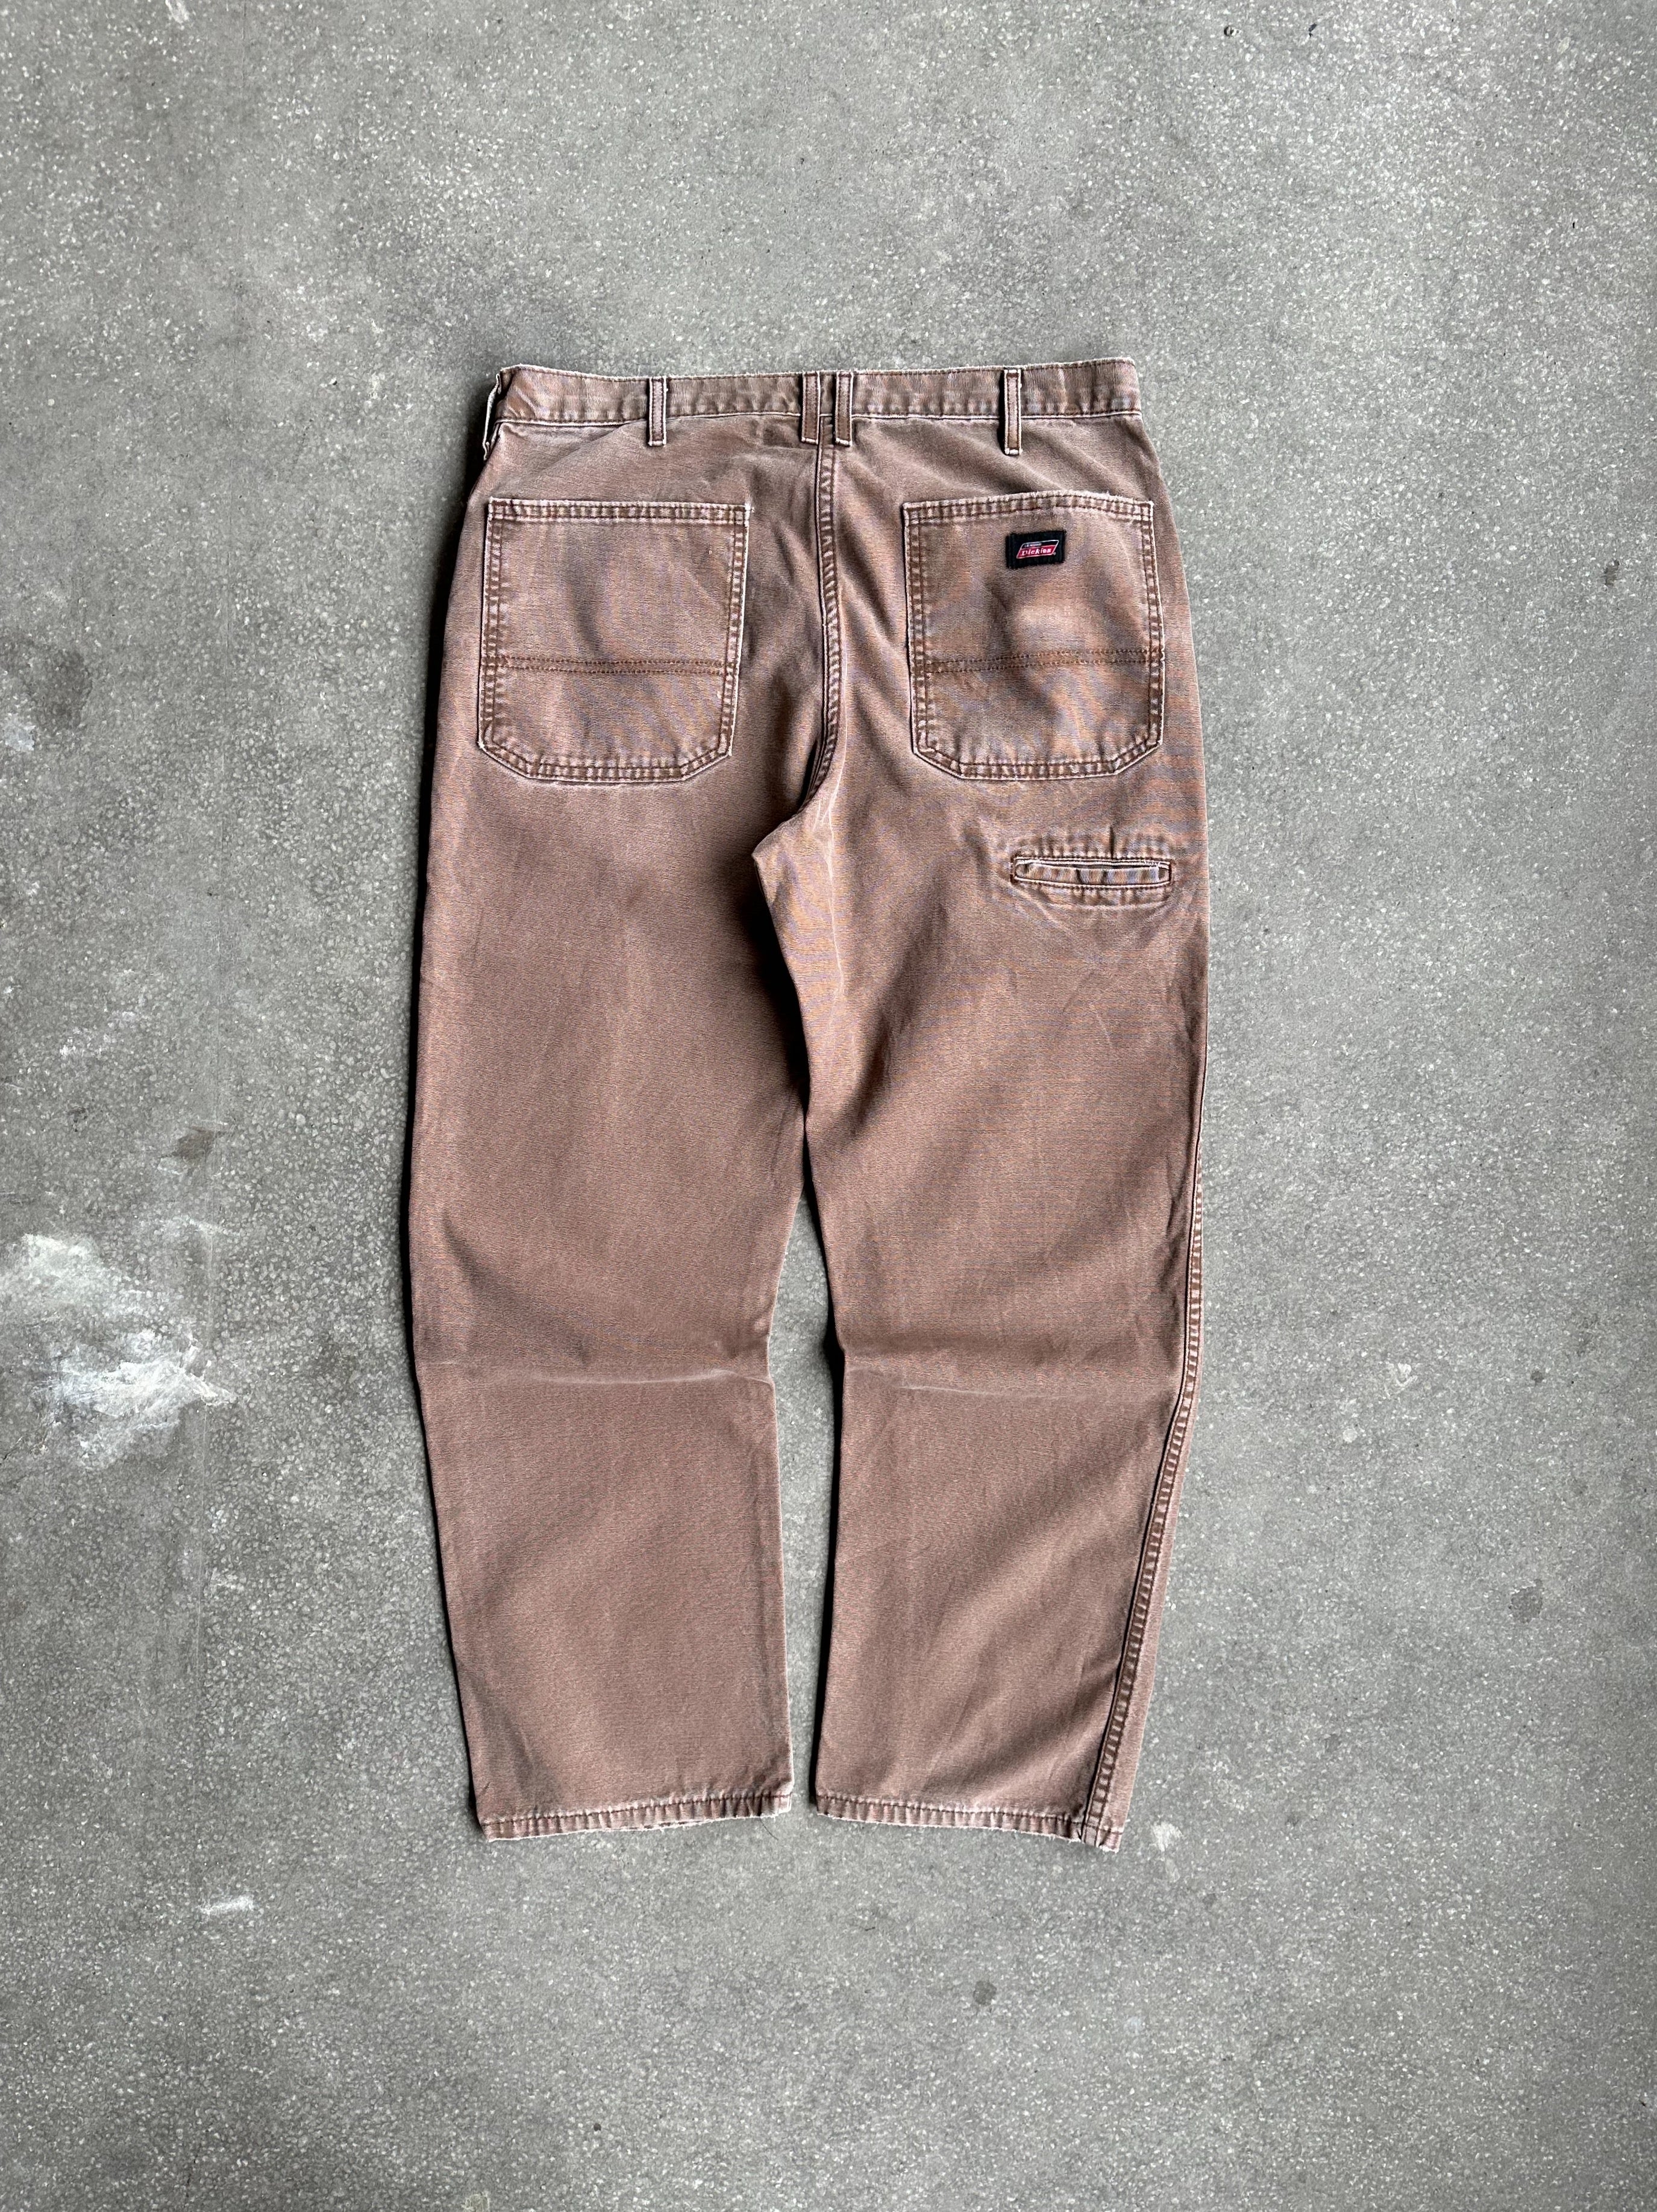 Vintage Dickies Pants - 34x32